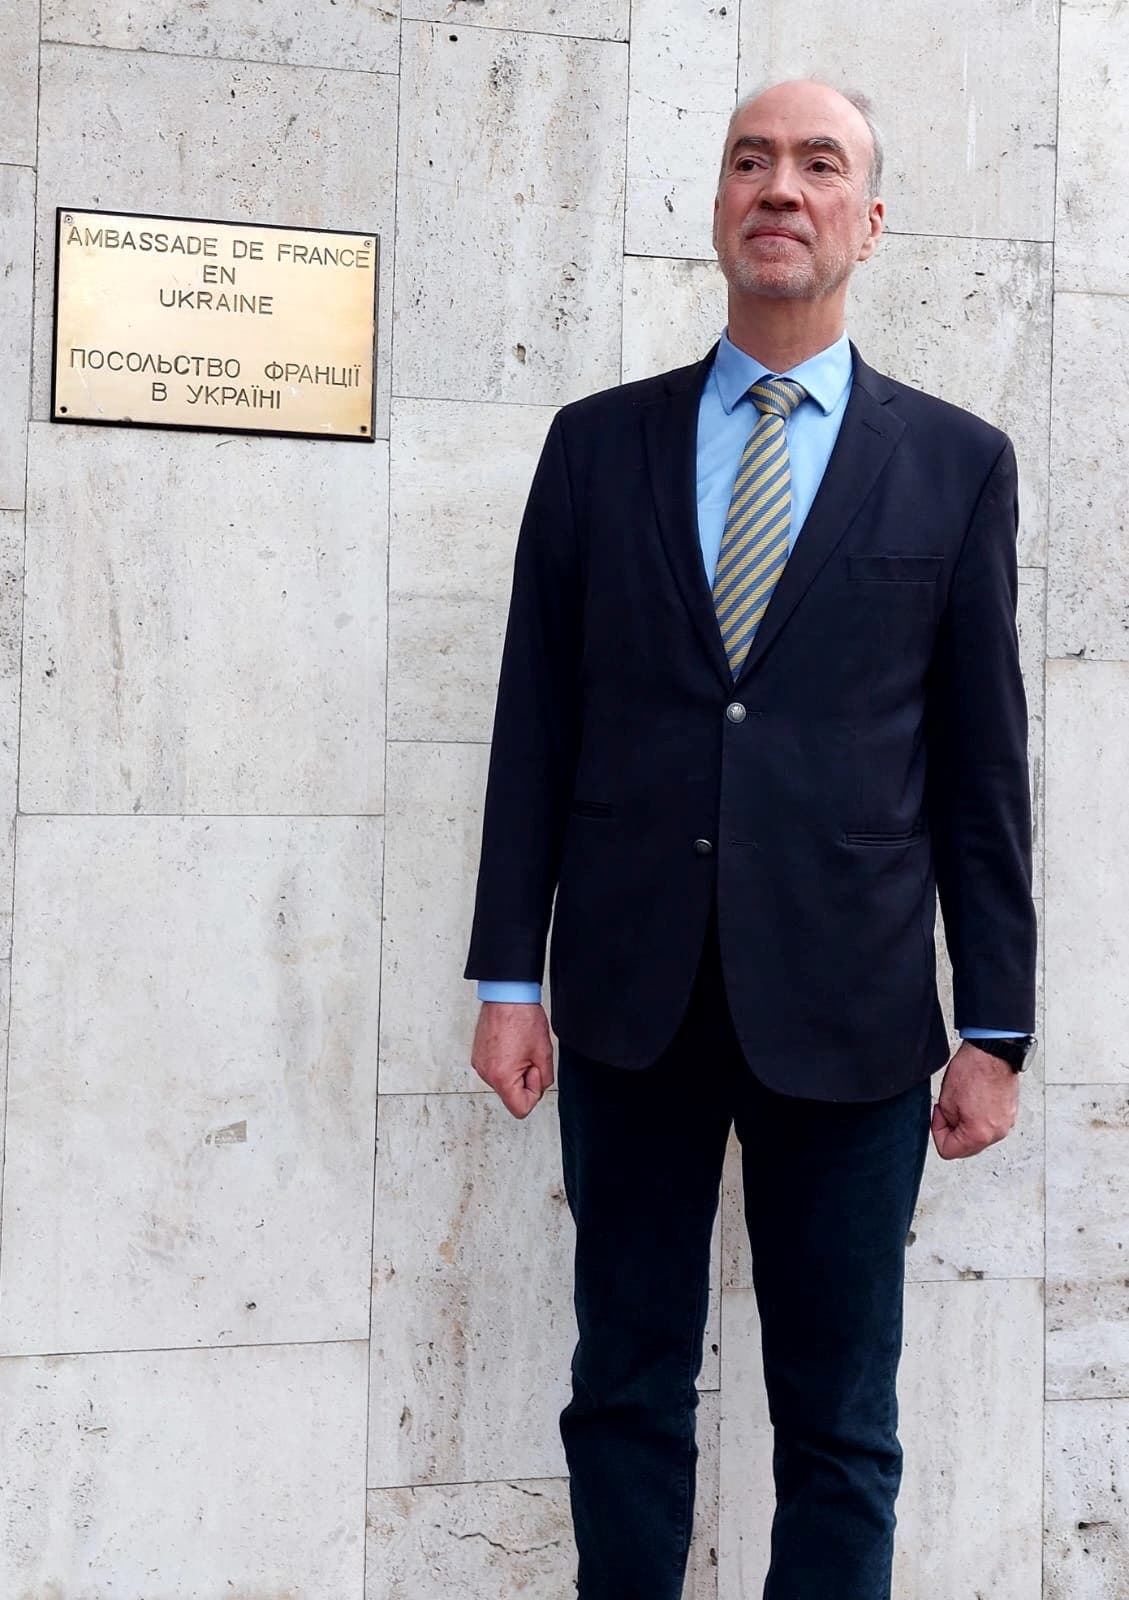 السفير الفرنسي يعيد افتتاح السفارة في كييف يوم السبت الماضي